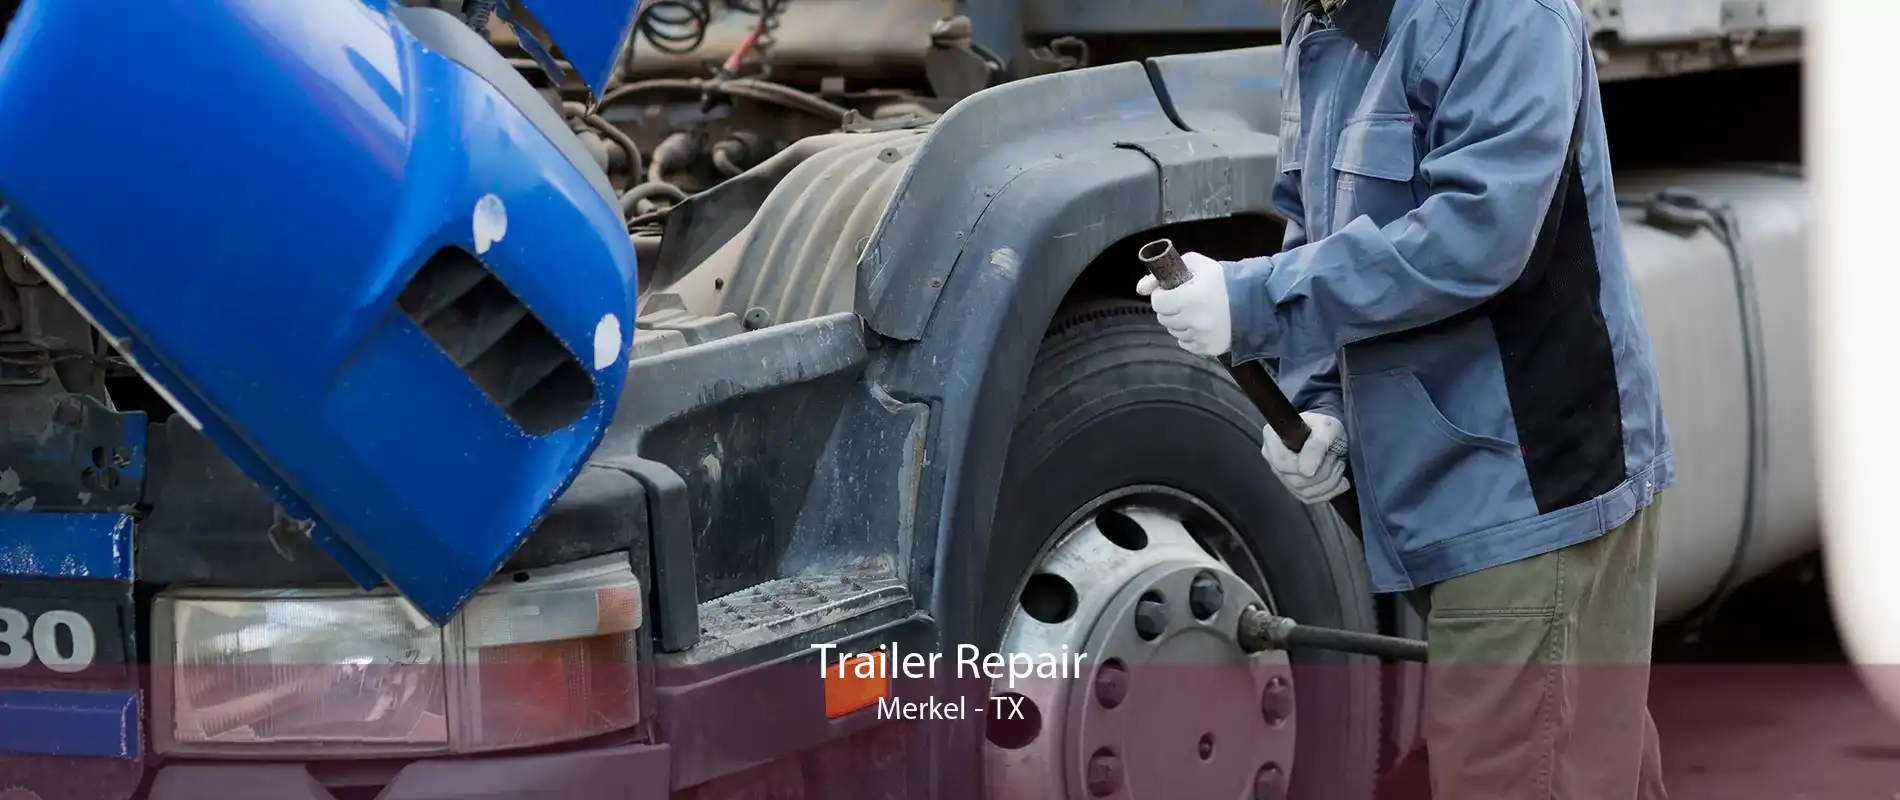 Trailer Repair Merkel - TX